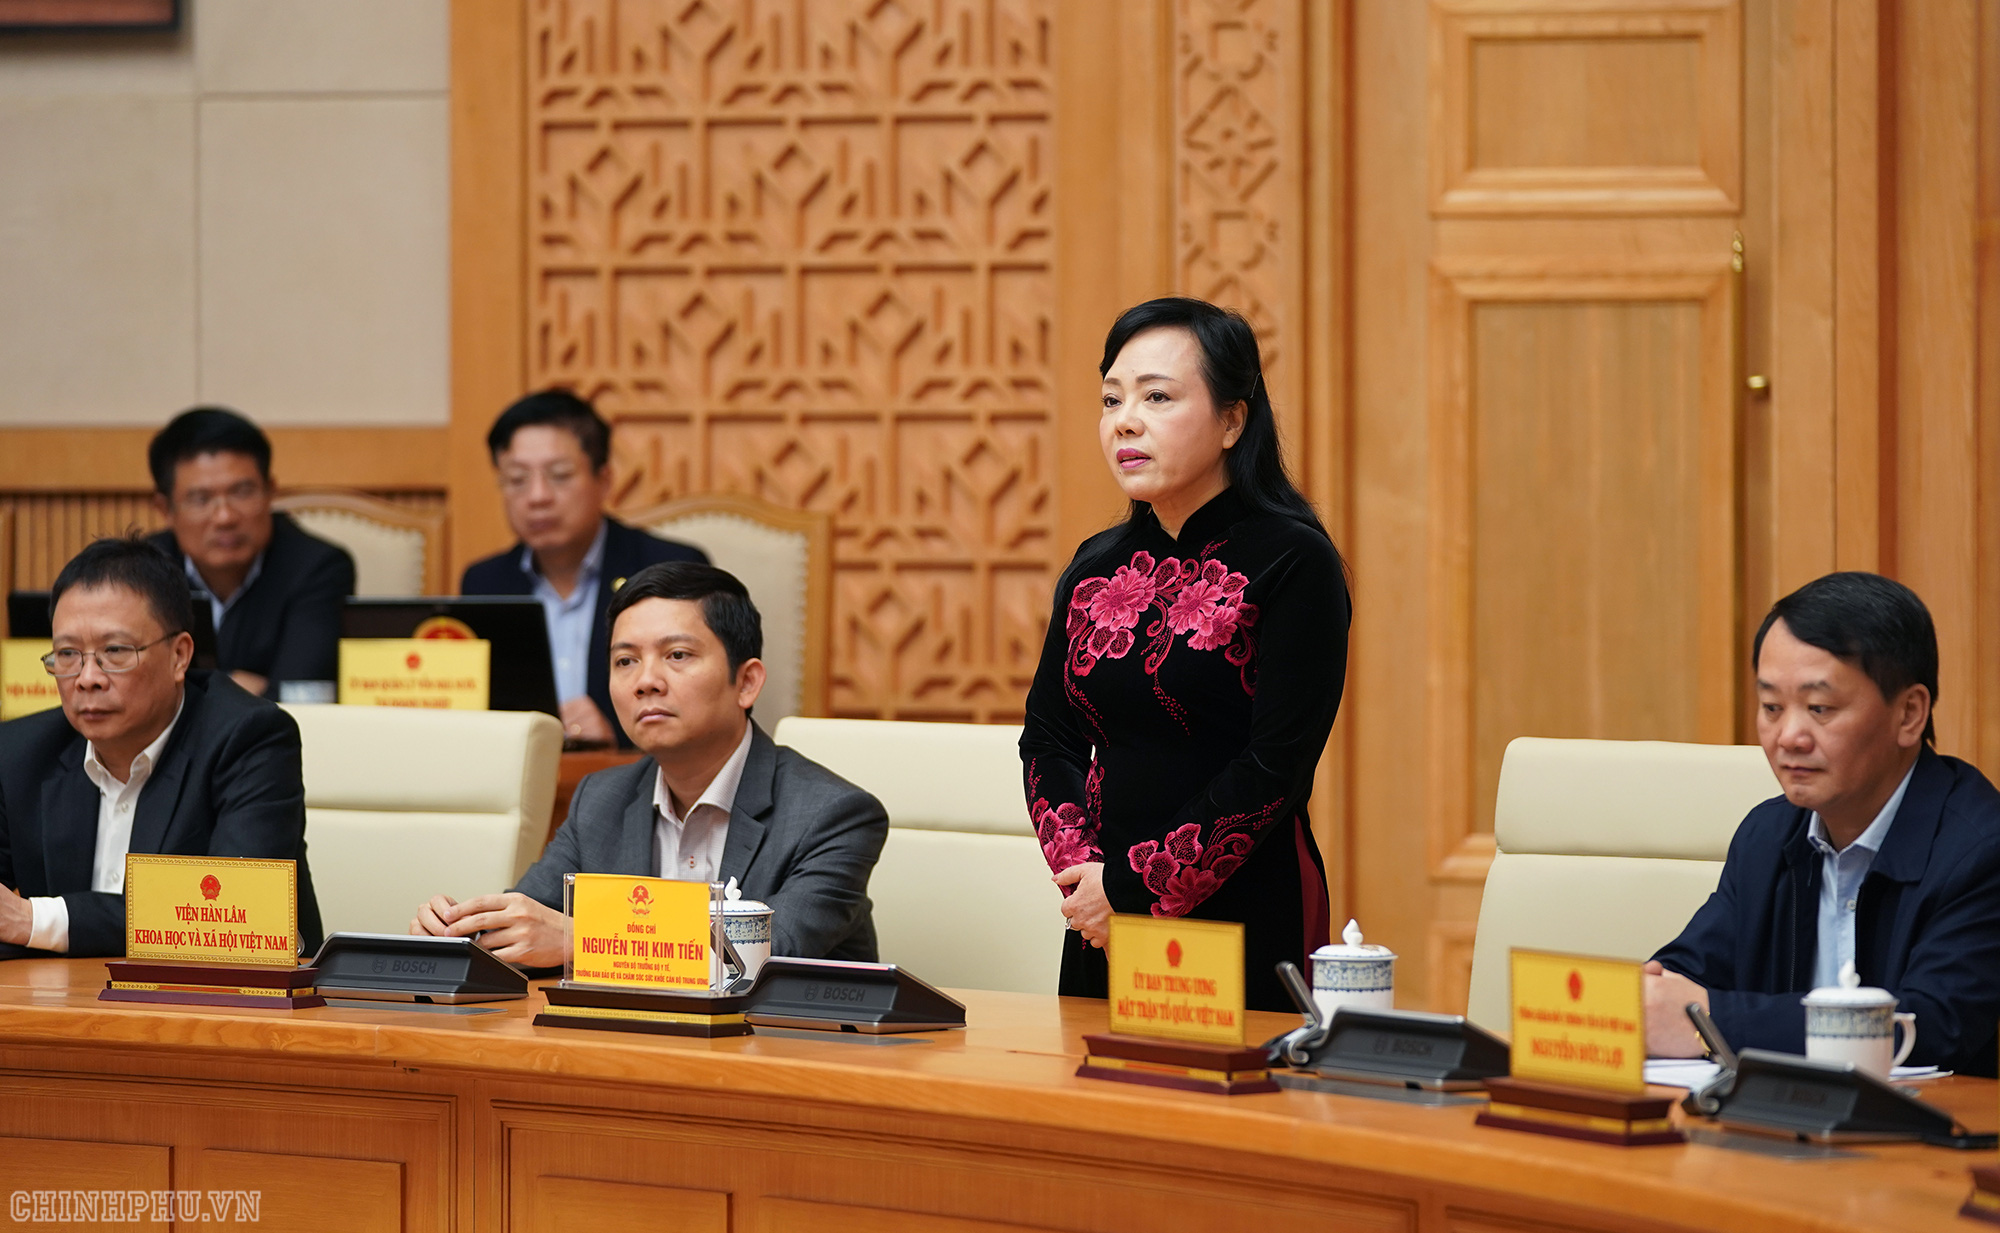 Bà Nguyễn Thị Kim Tiến tham dự buổi họp Chính phủ: &quot;Hôm nay là ngày đáng nhớ trong cuộc đời&quot; - Ảnh 2.